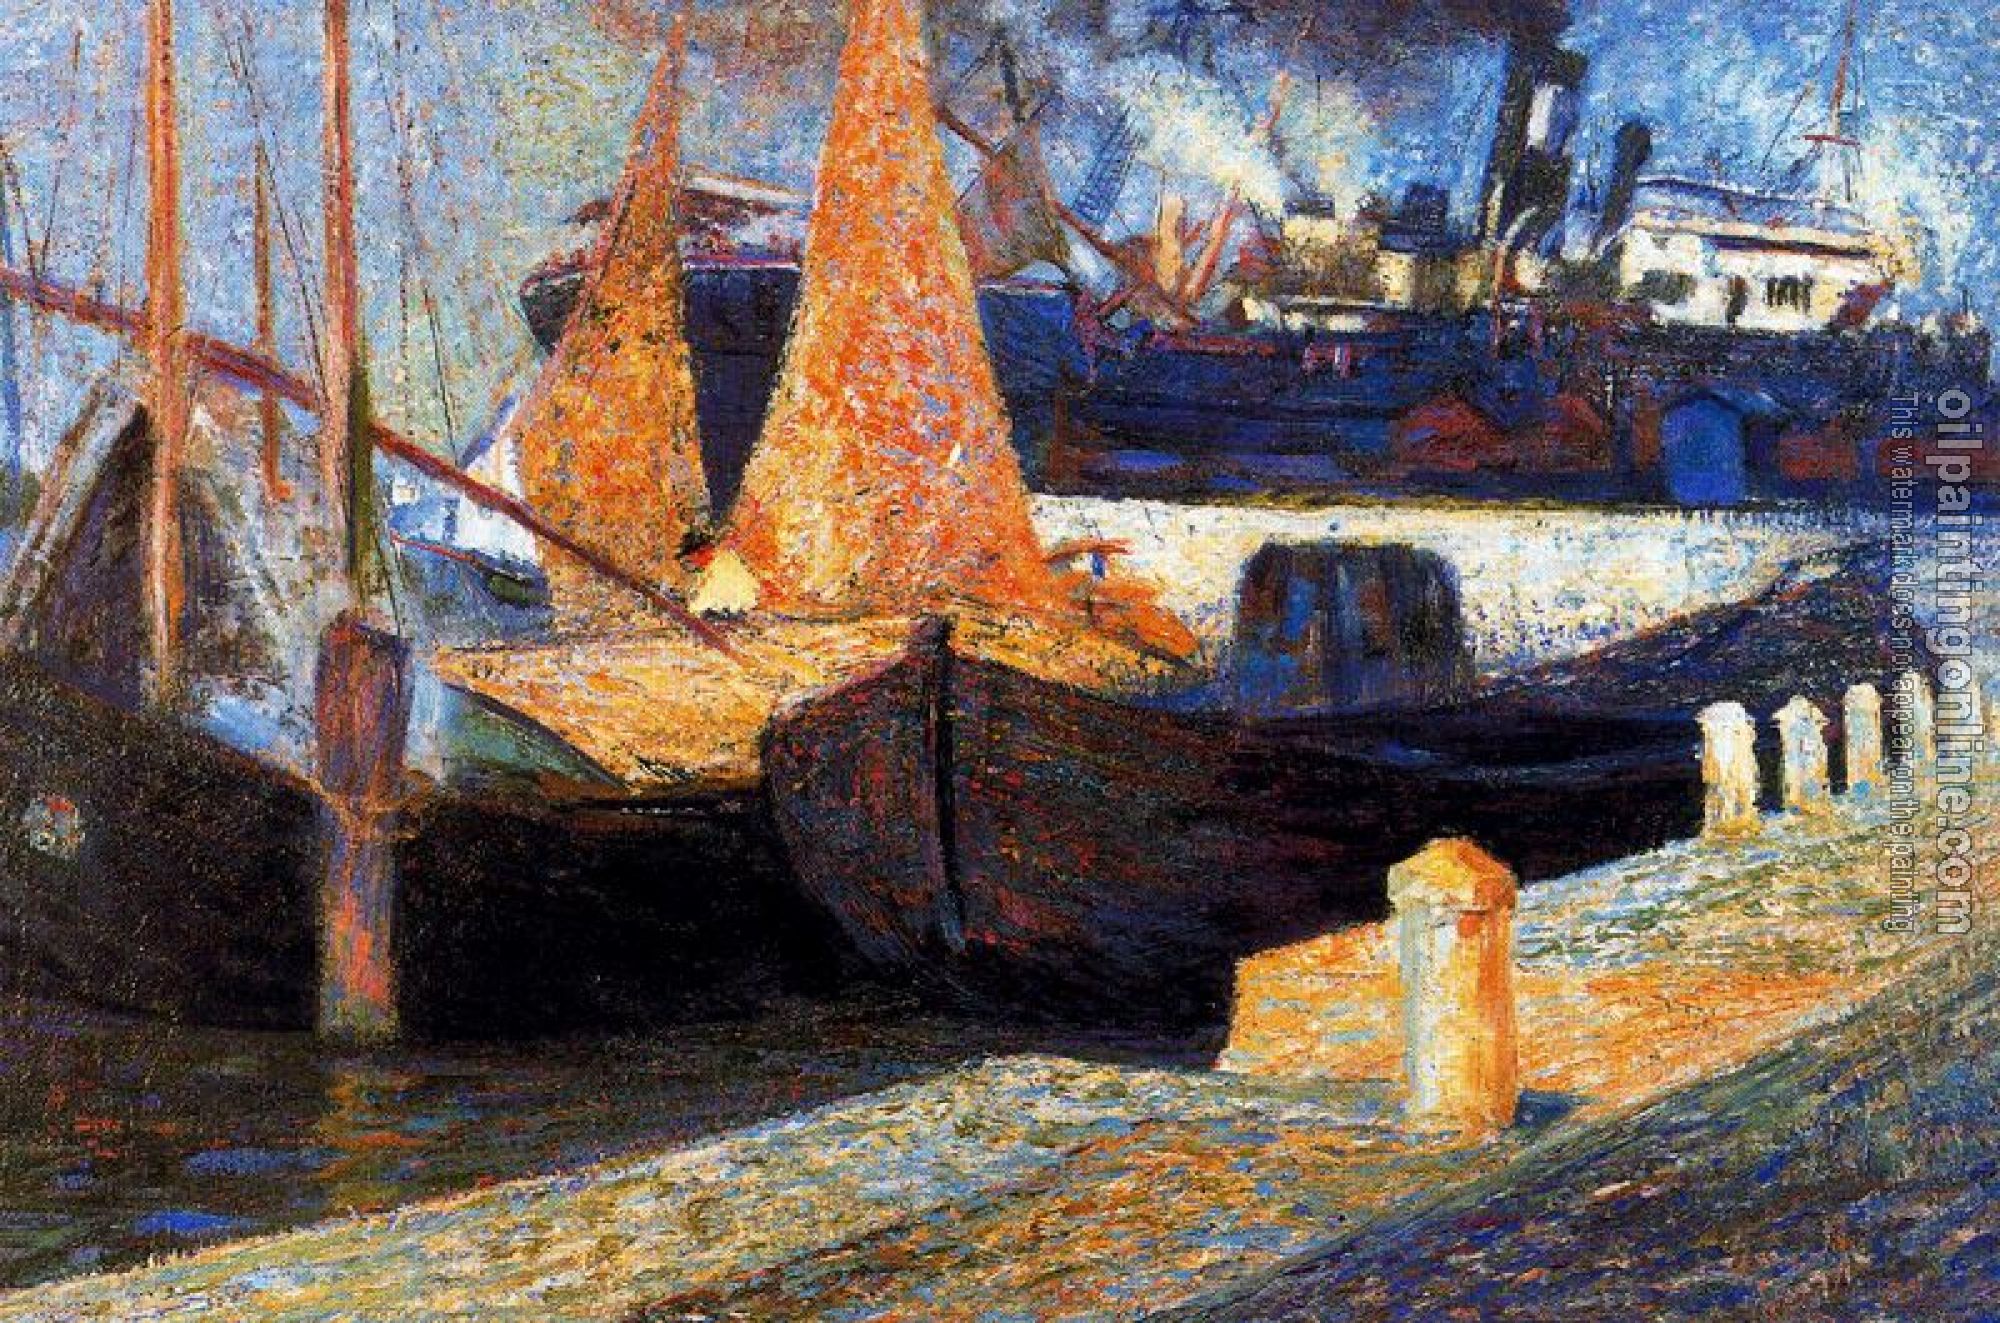 Umberto Boccioni - Boats in Sunlight